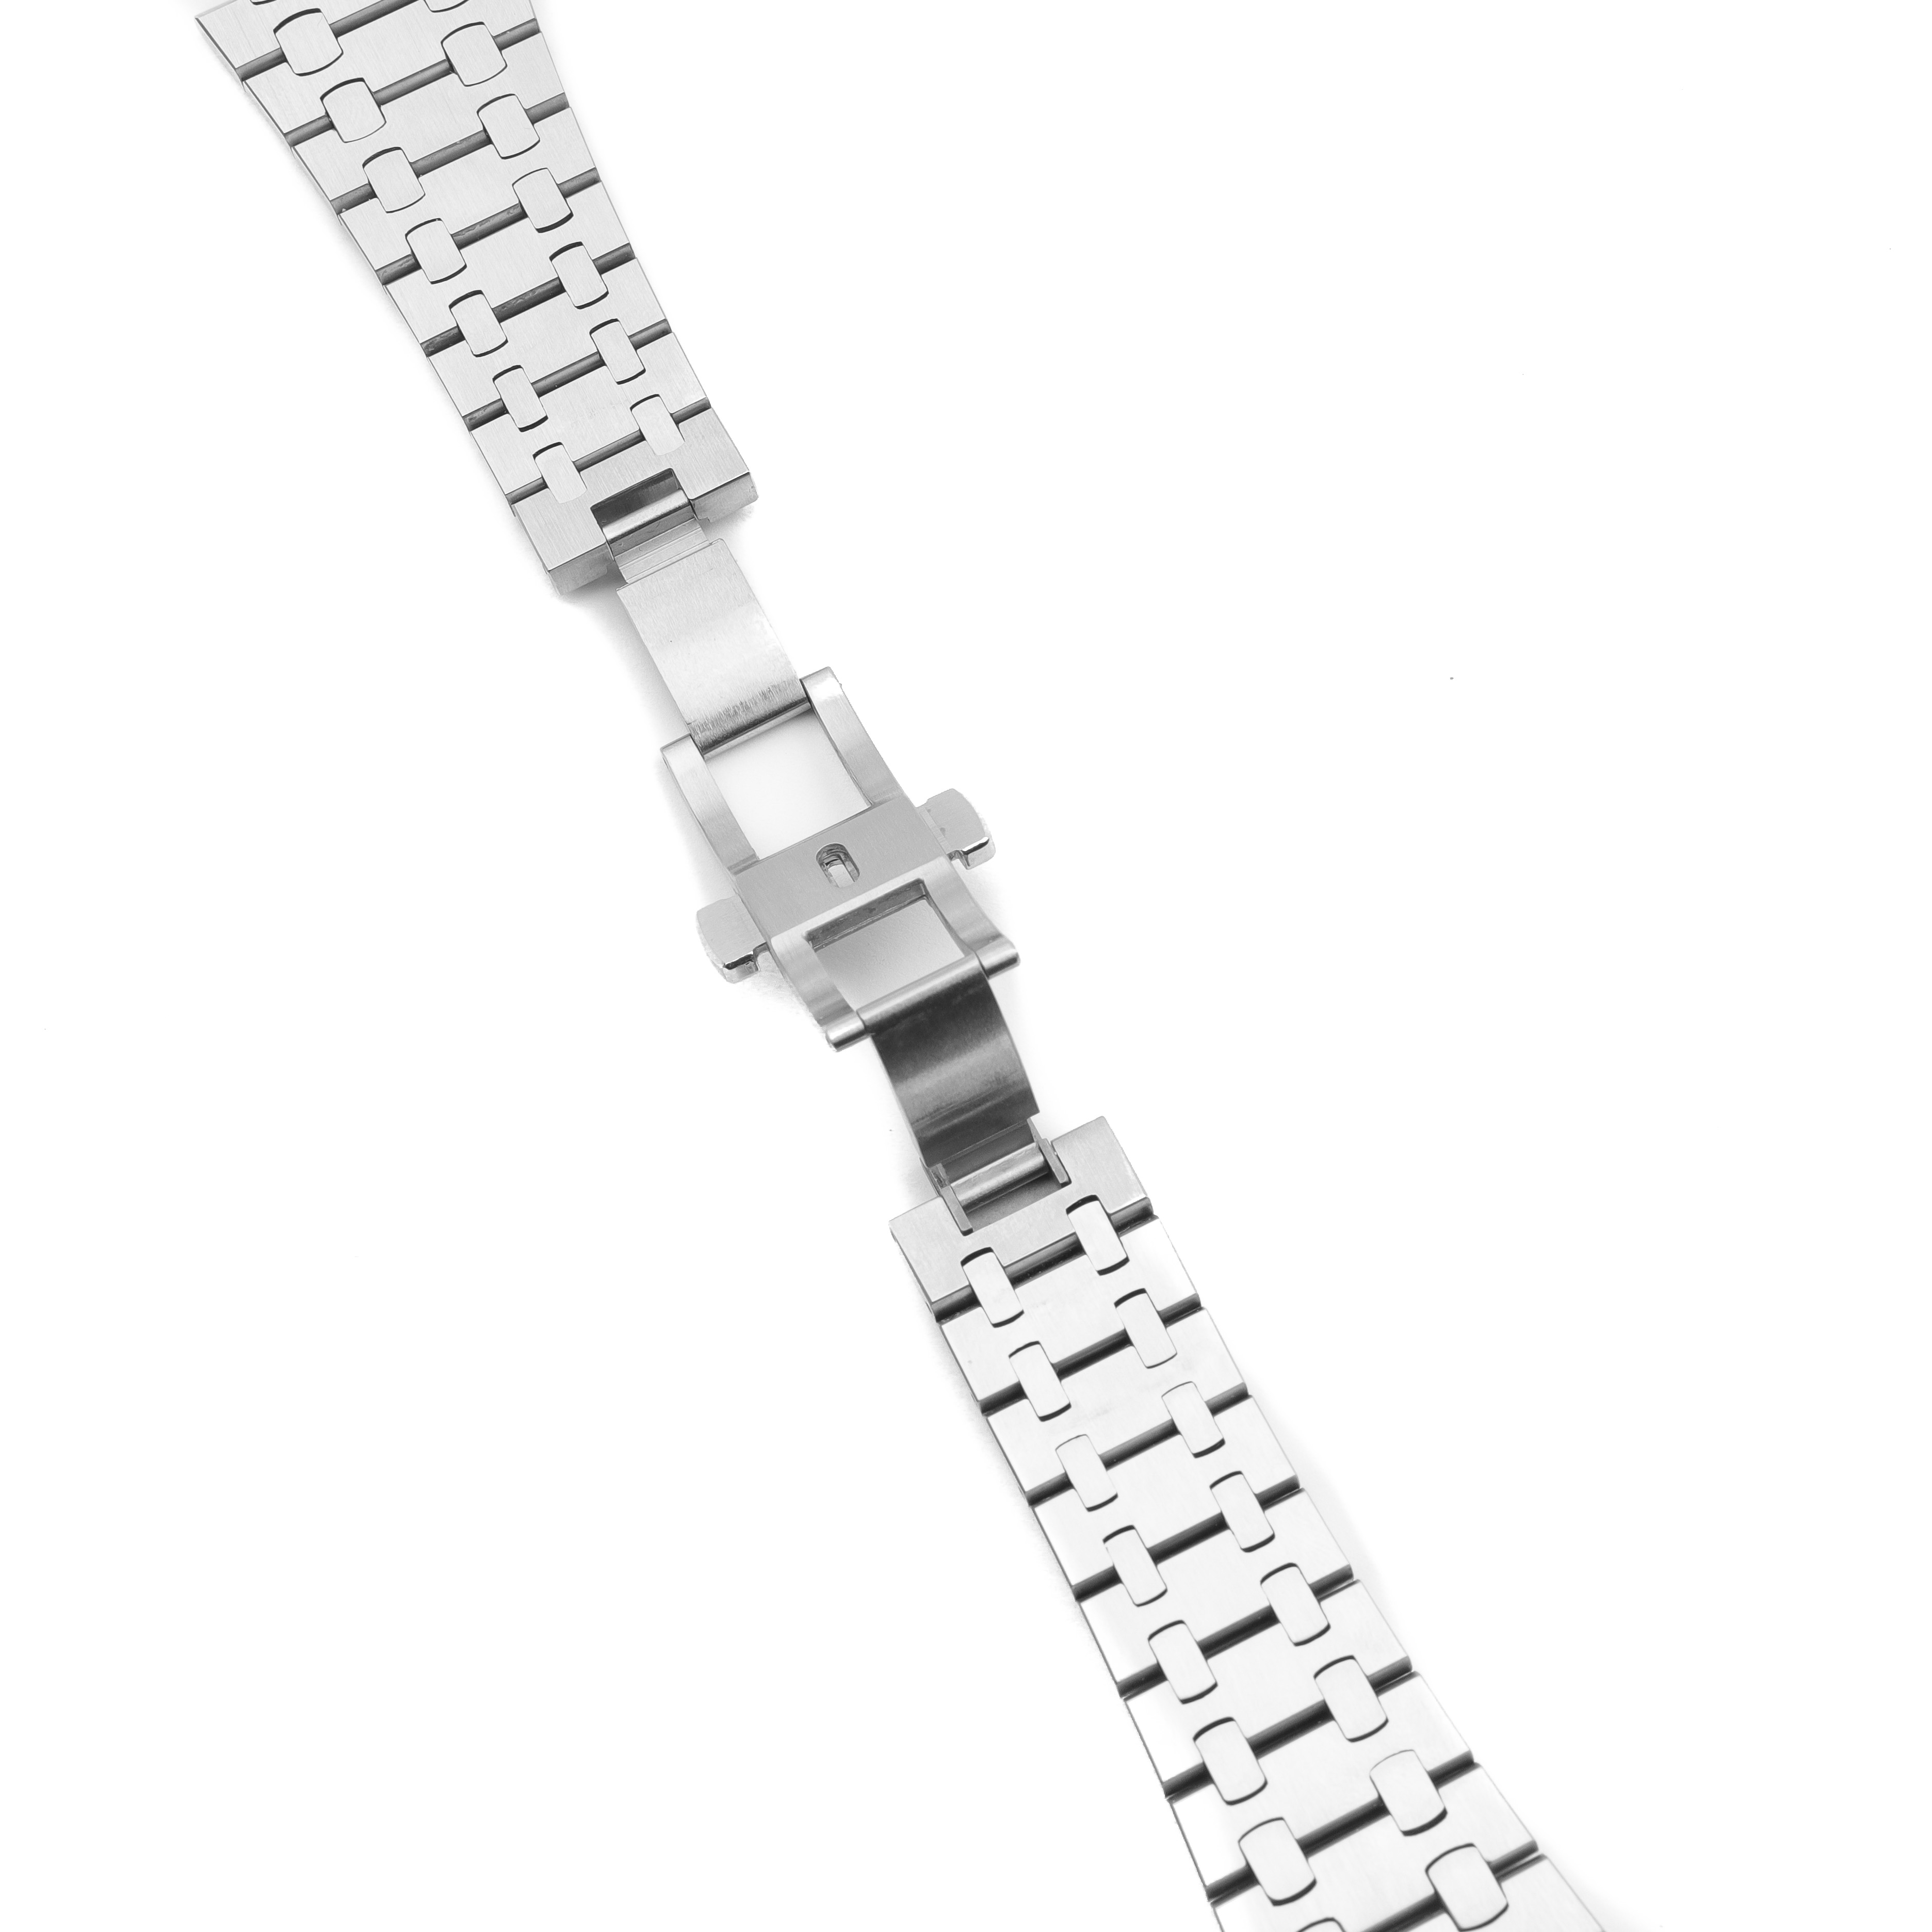 Aggregate more than 67 audemars piguet bracelet super hot - ceg.edu.vn